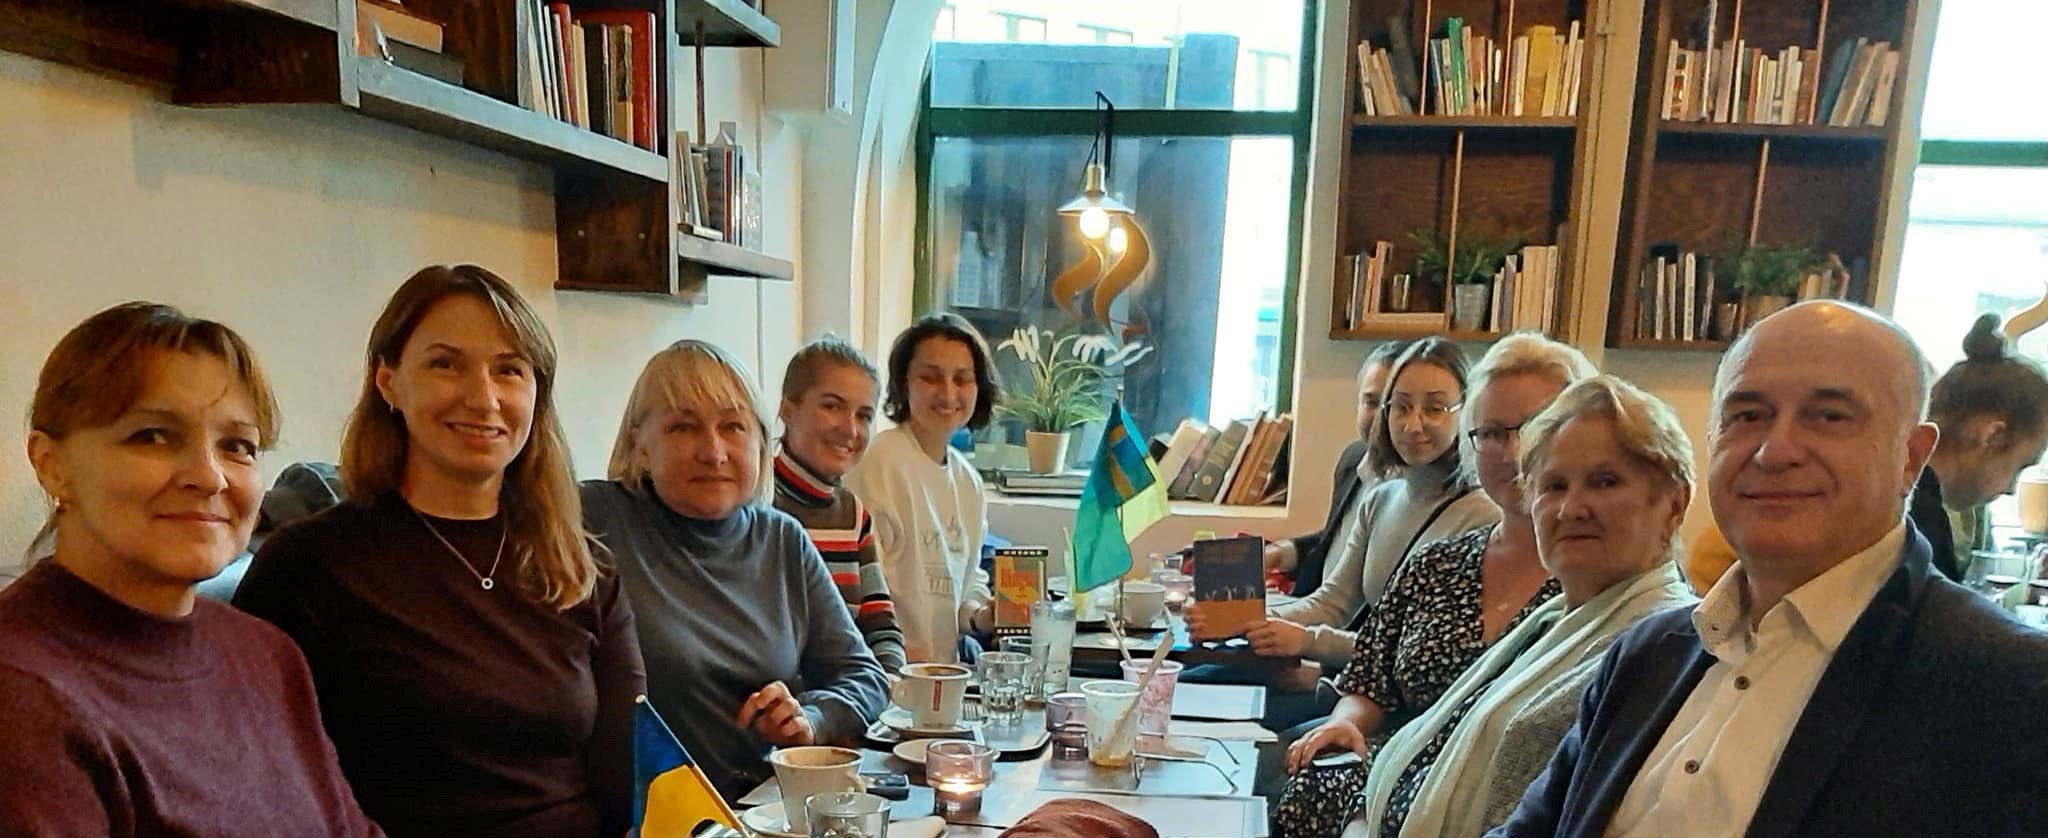 Ukrainian Community in Goteborg